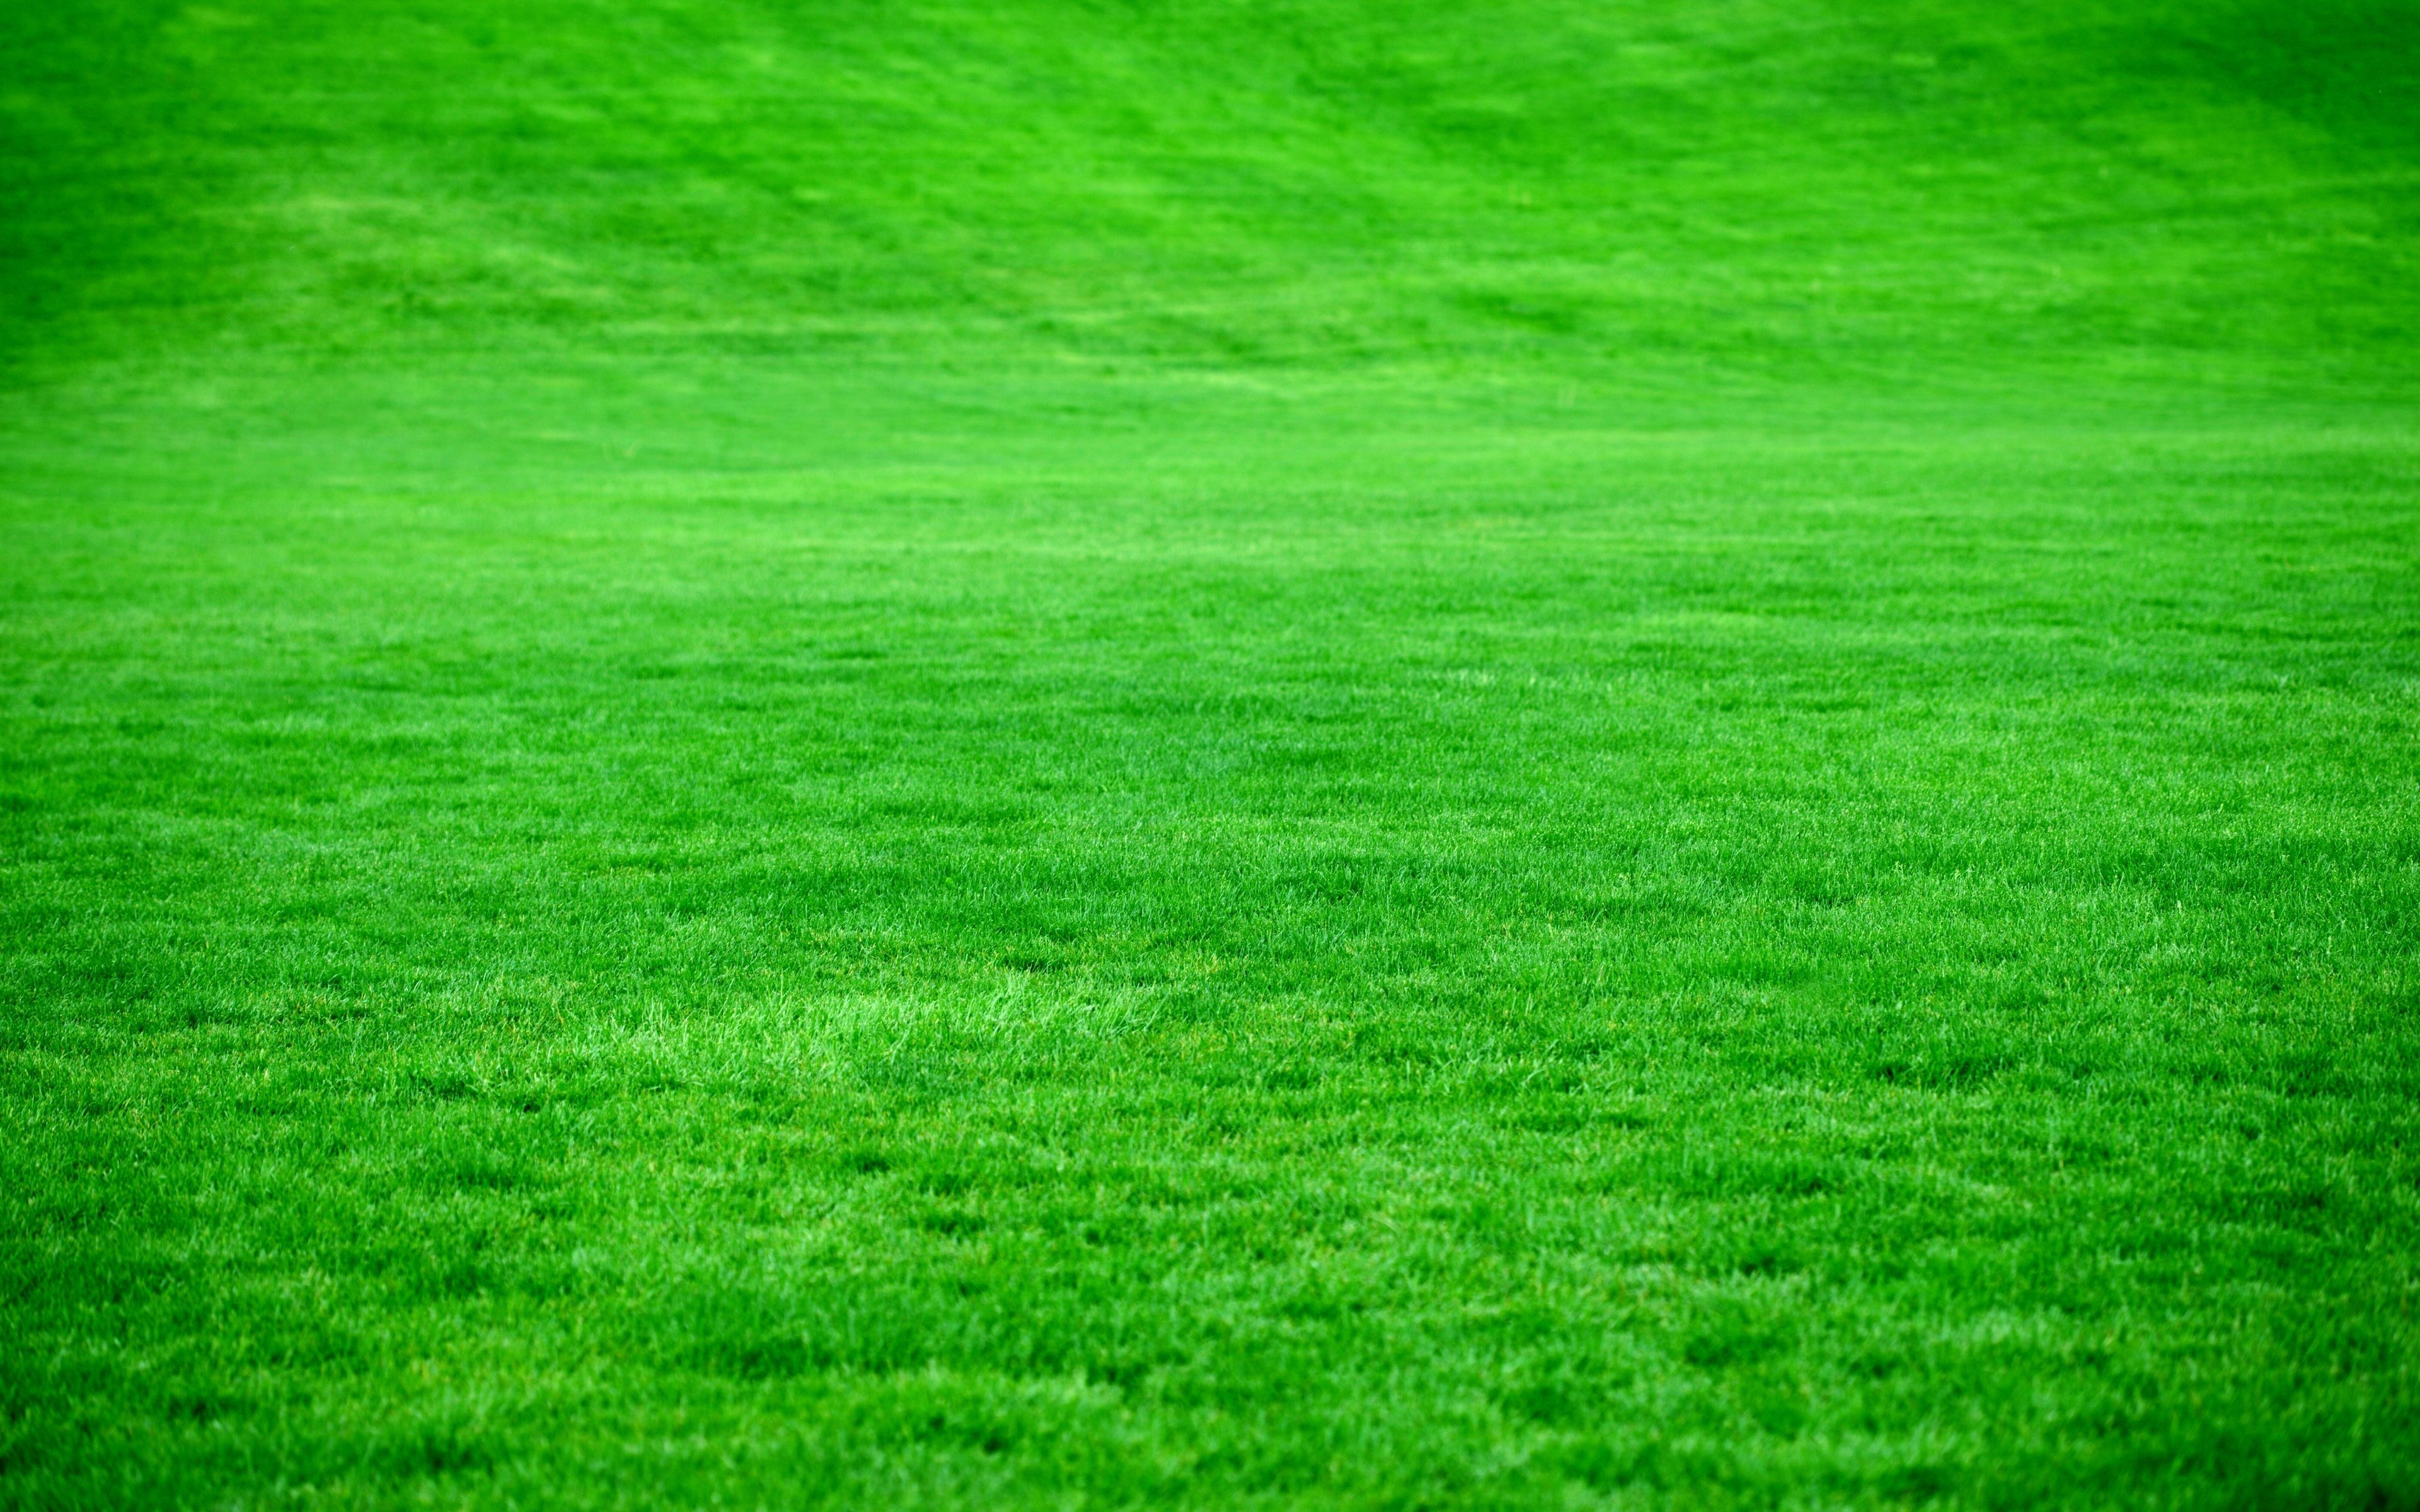 4K Grass Wallpaper Free 4K Grass Background